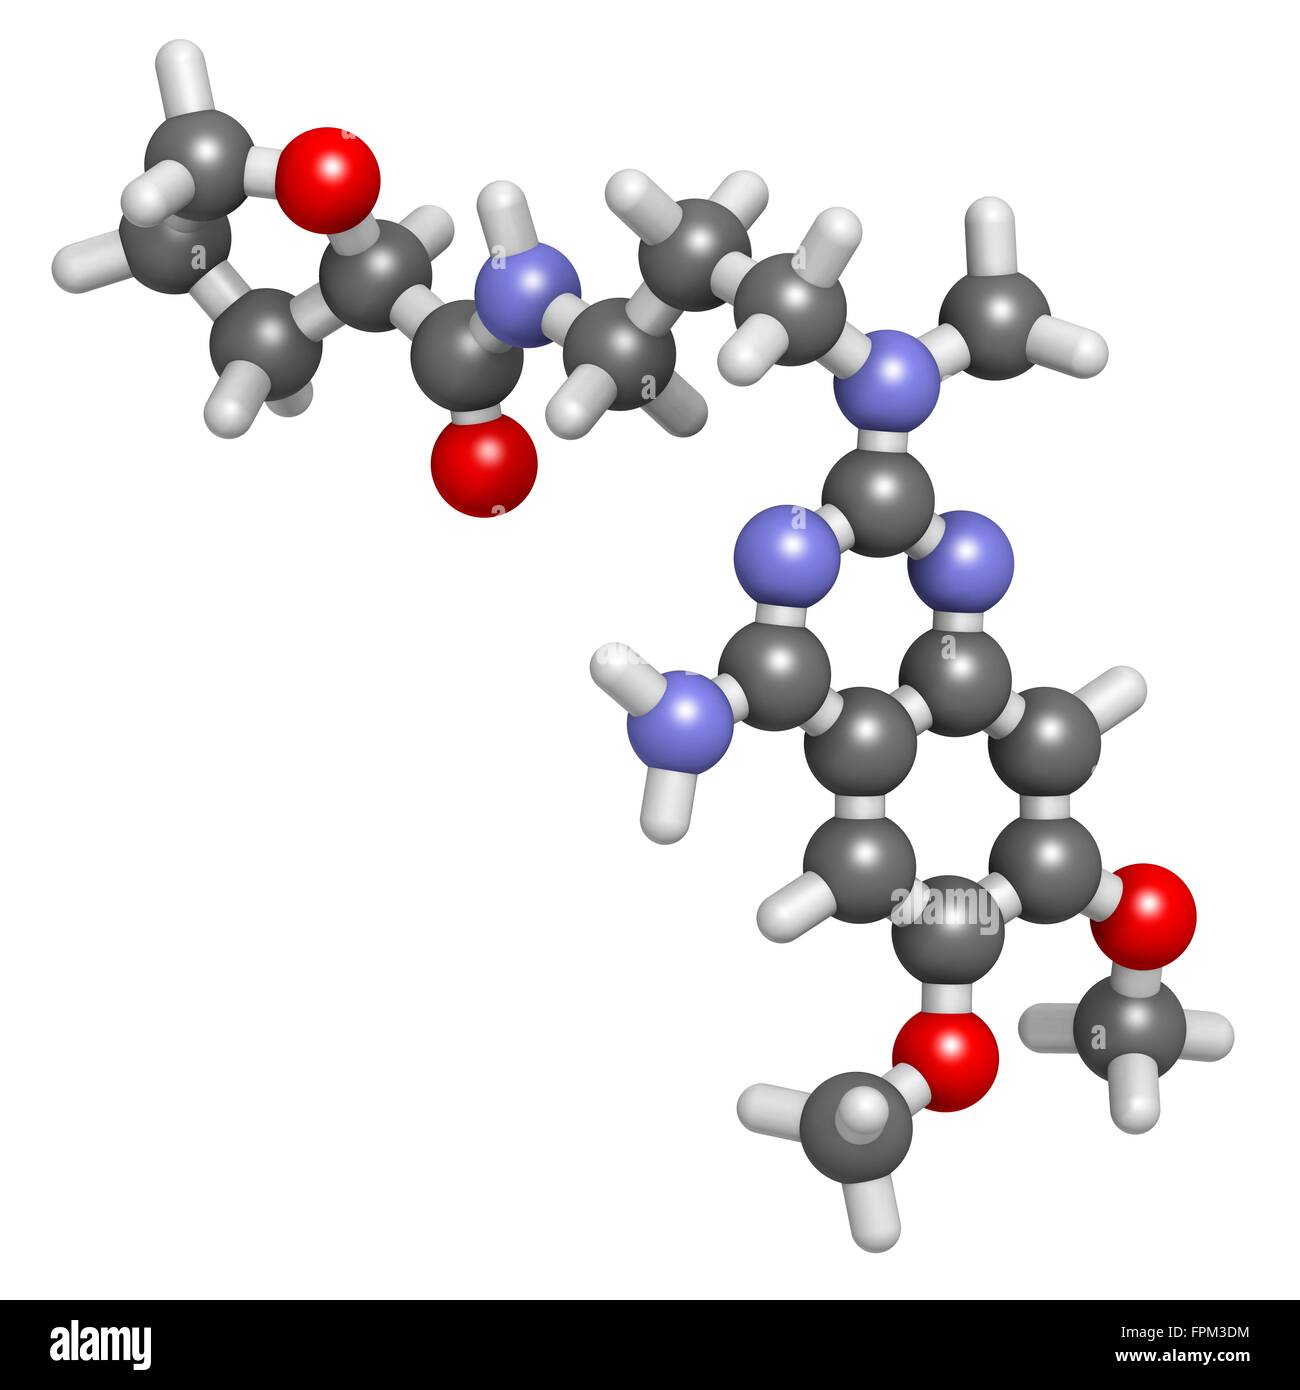 Alfuzosin Wirkstoffmolekül benigne Prostata-Hyperplasie (BPH). Atome werden als Kugeln mit C Venti al Farbkodierung dargestellt: Stockfoto